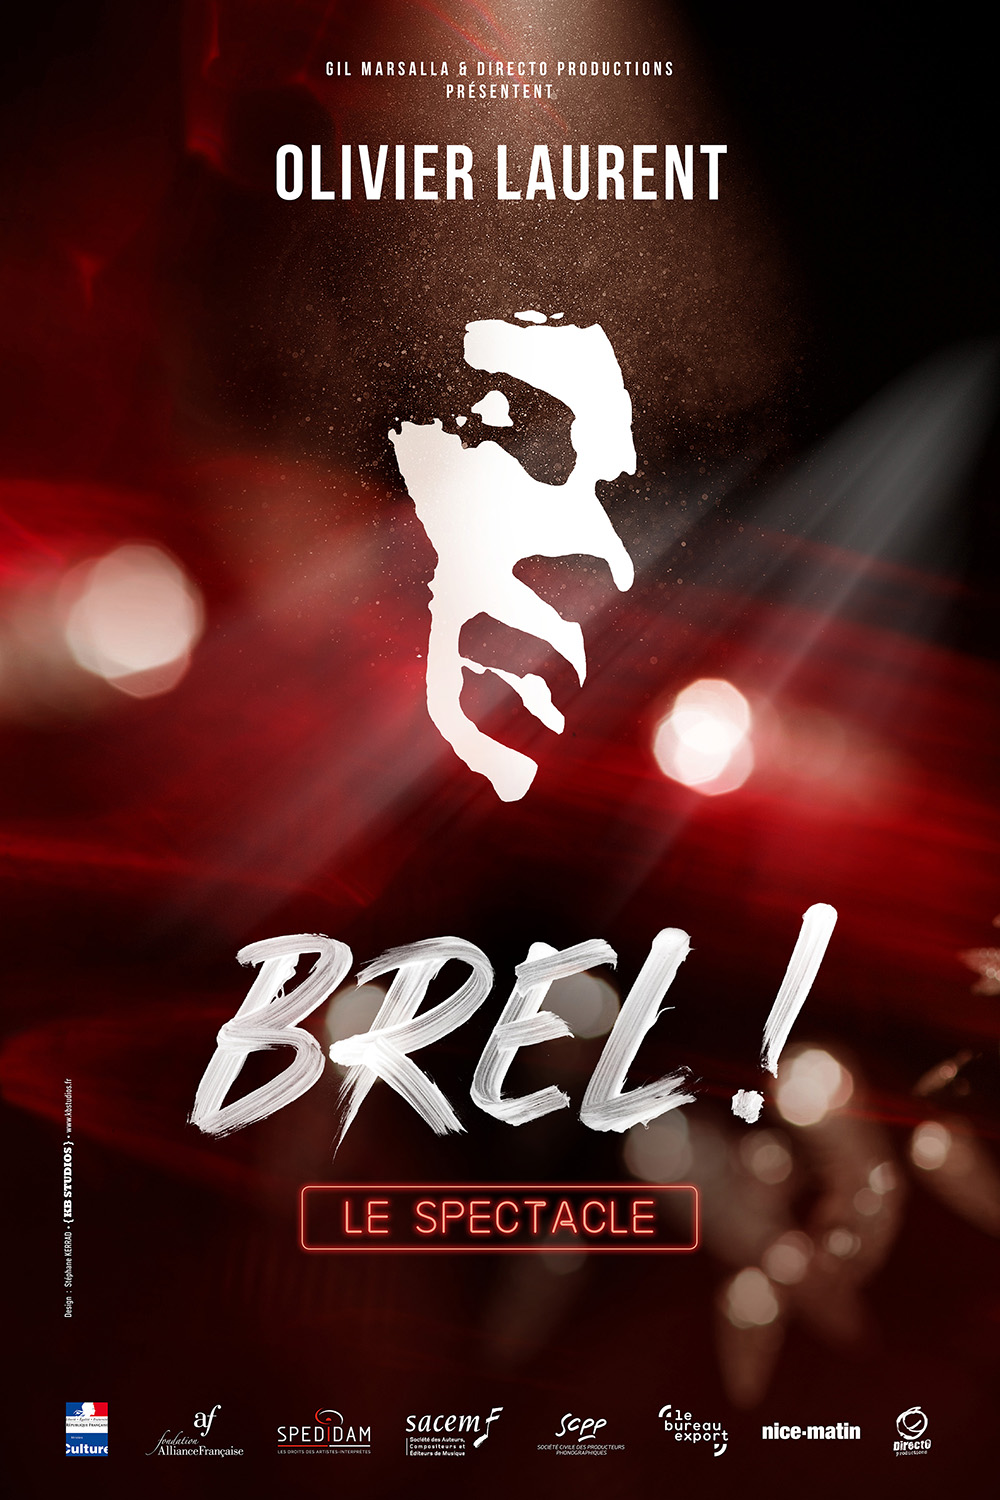 BREL ! le spectacle
Visuel : Stéphane Kerrad - Kb Studios Paris. 
https://www.kbstudios.paris